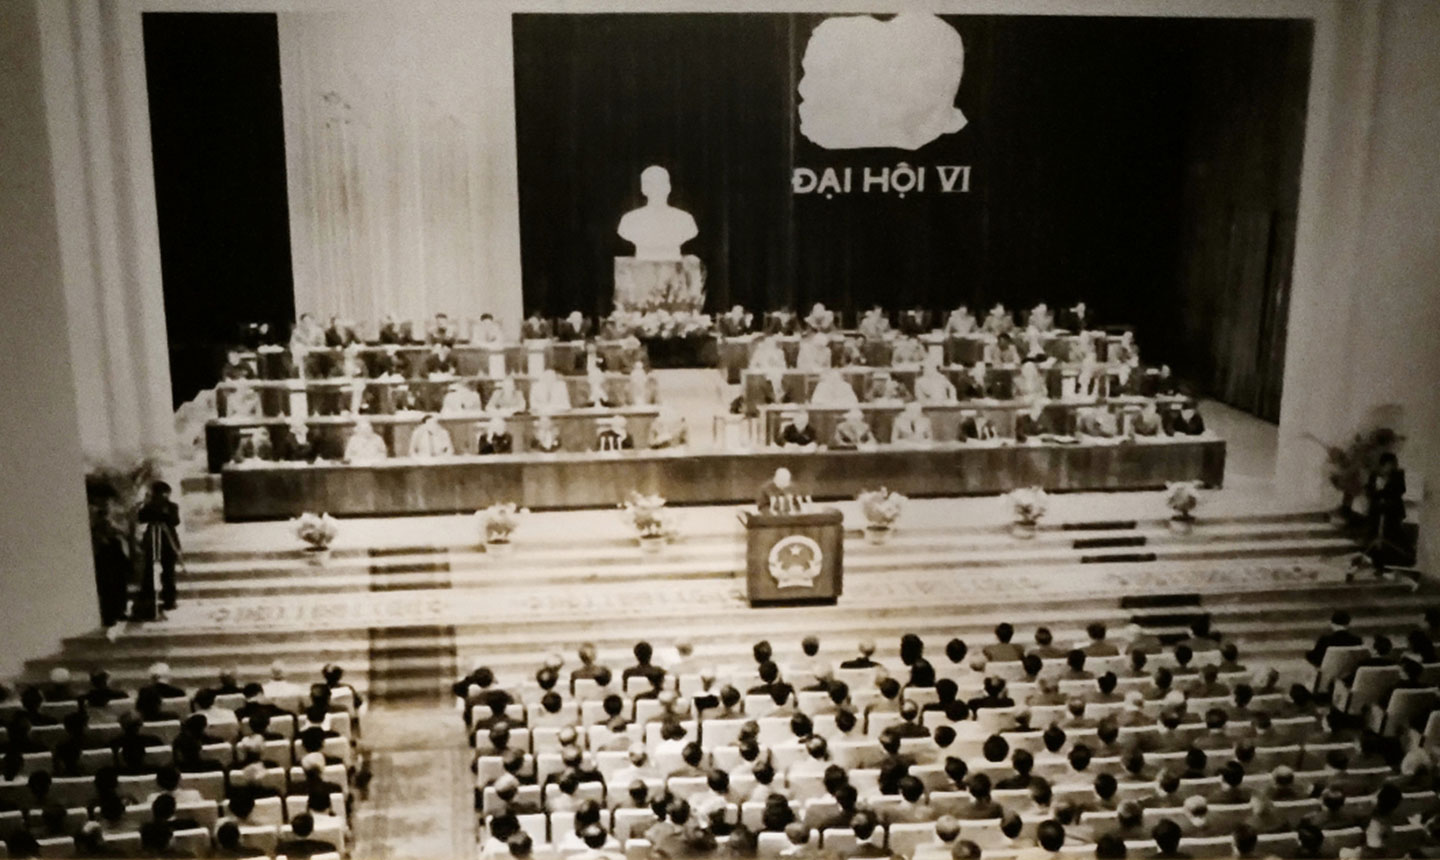 Năm 1986, Đại hội đại biểu toàn quốc lần thứ VI Đảng Cộng sản Việt Nam quyết định đường lối đổi mới, tiếp tục xây dựng chủ nghĩa xã hội, hướng tới mục tiêu: “Dân giàu, nước mạnh, xã hội công bằng, văn minh”.